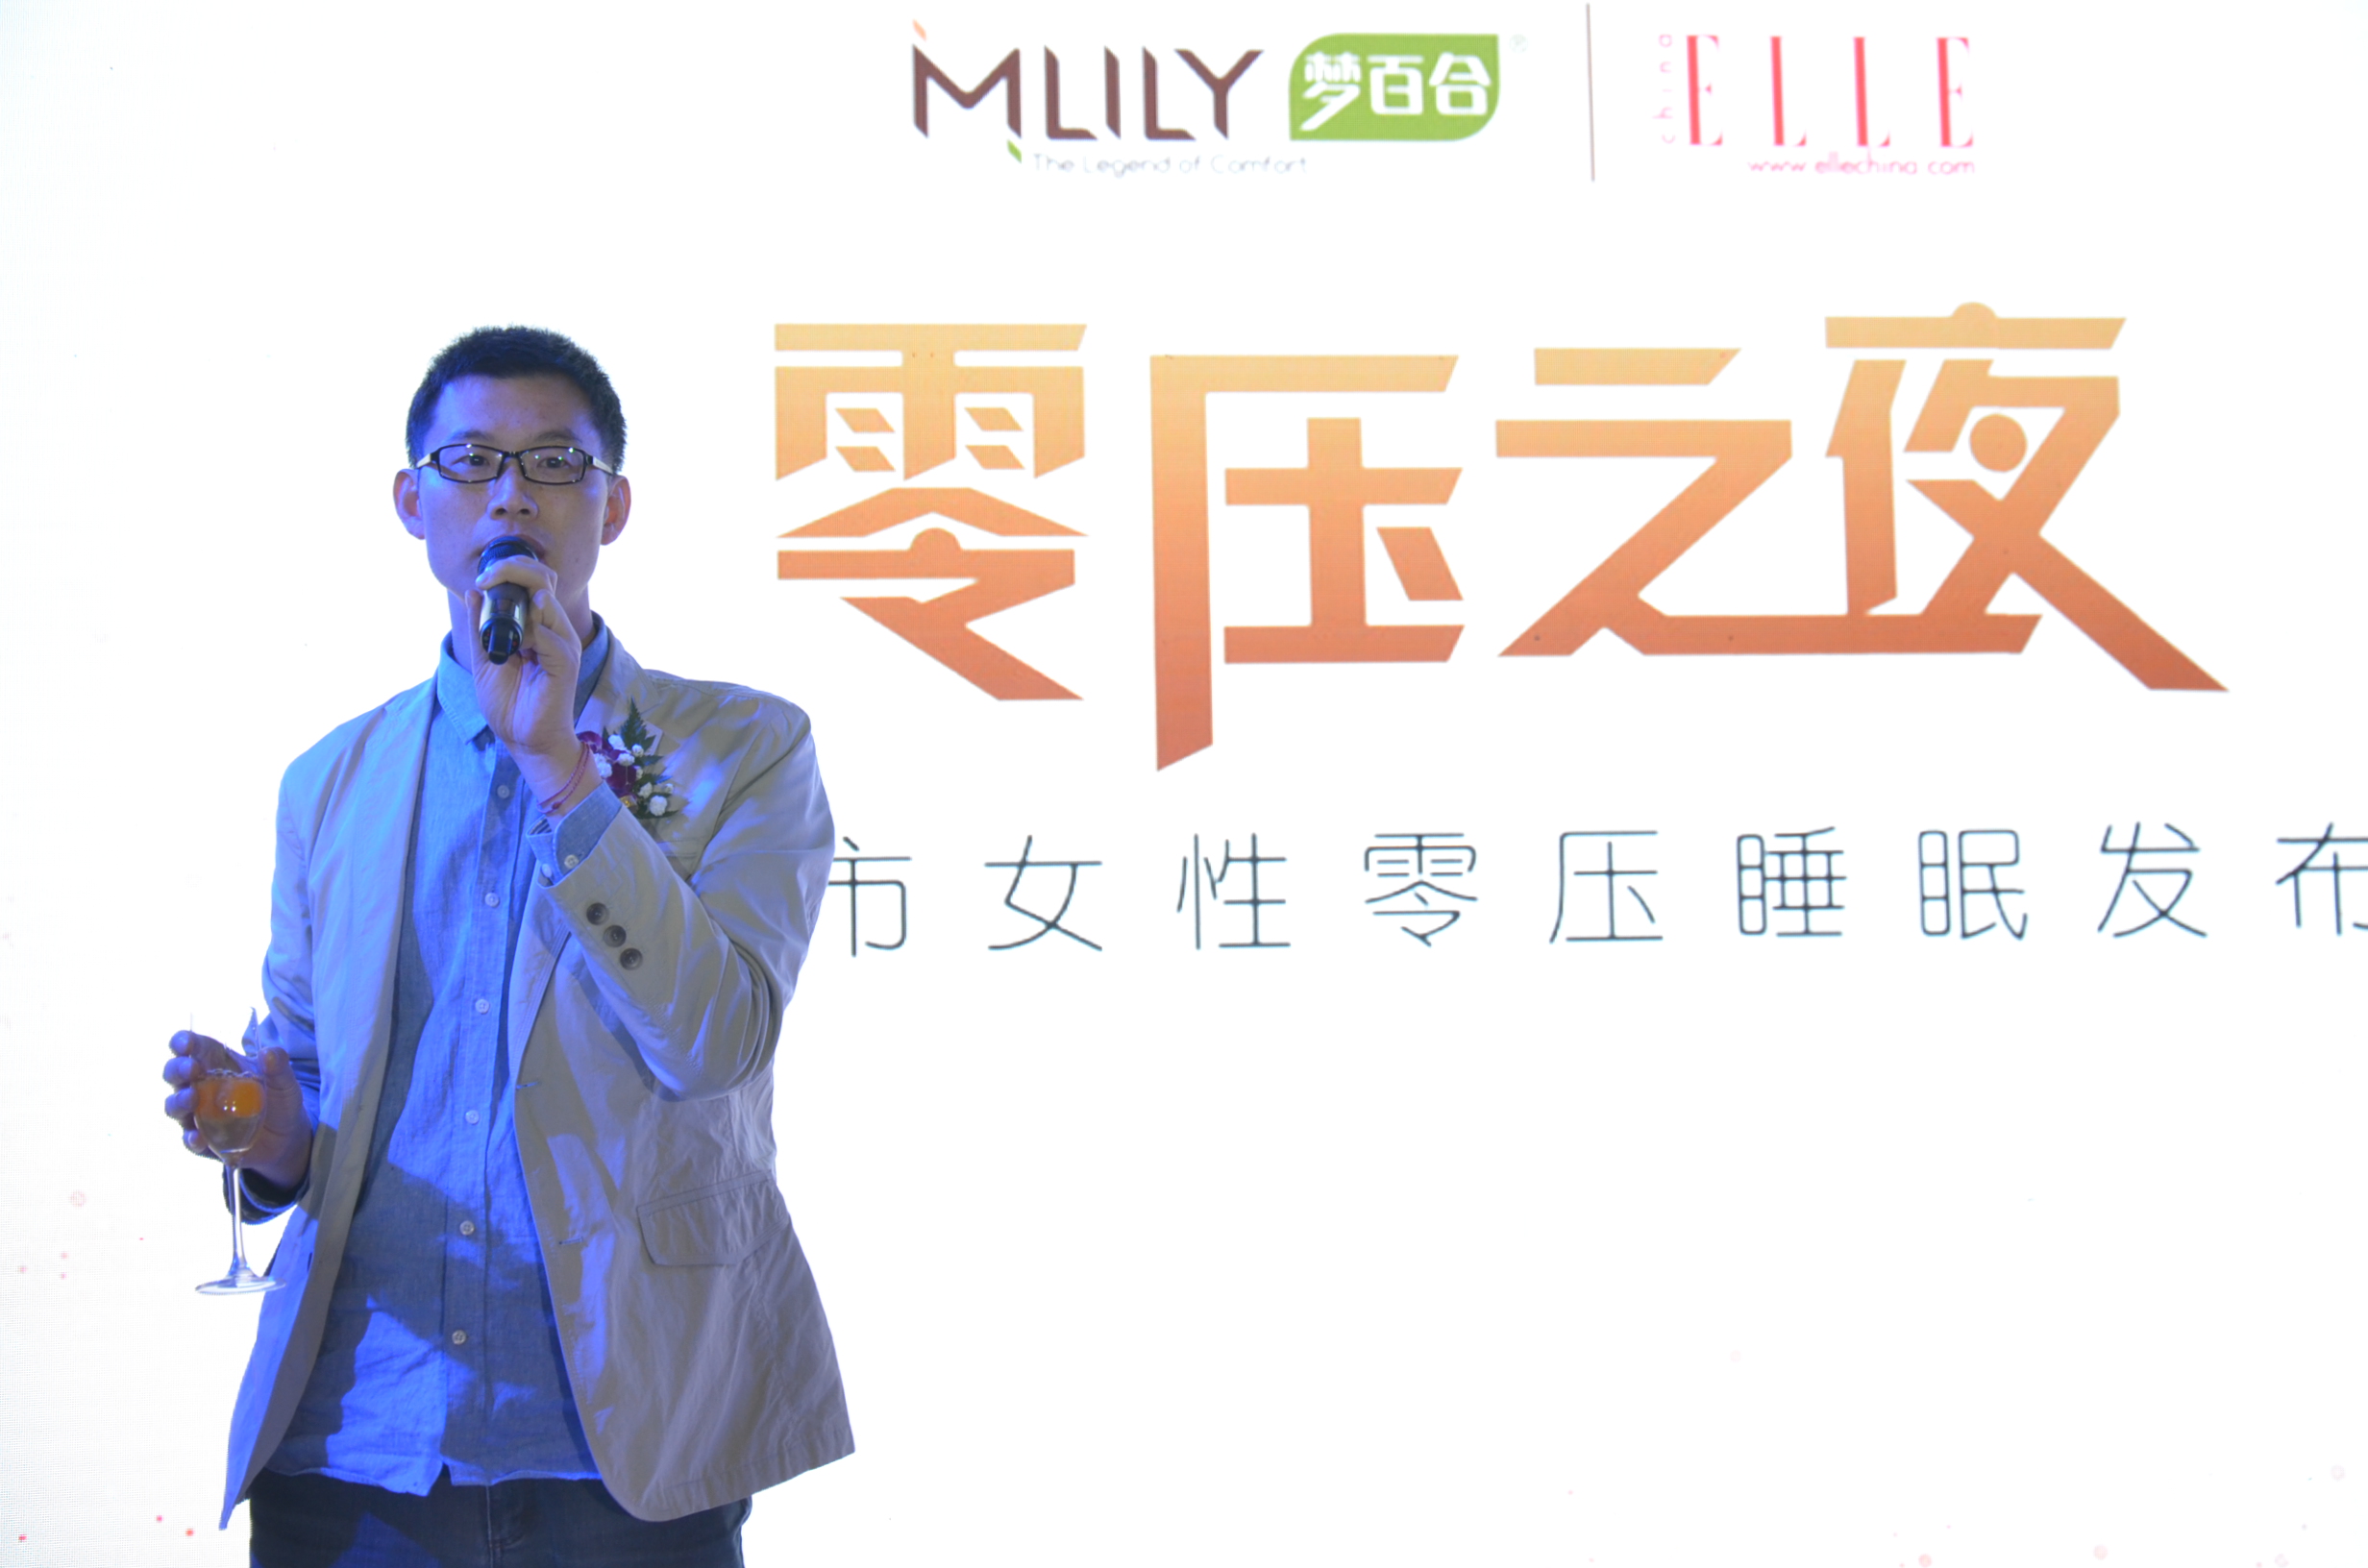 恒康家居董事长 Mlily梦百合品牌创始人 倪张根先生